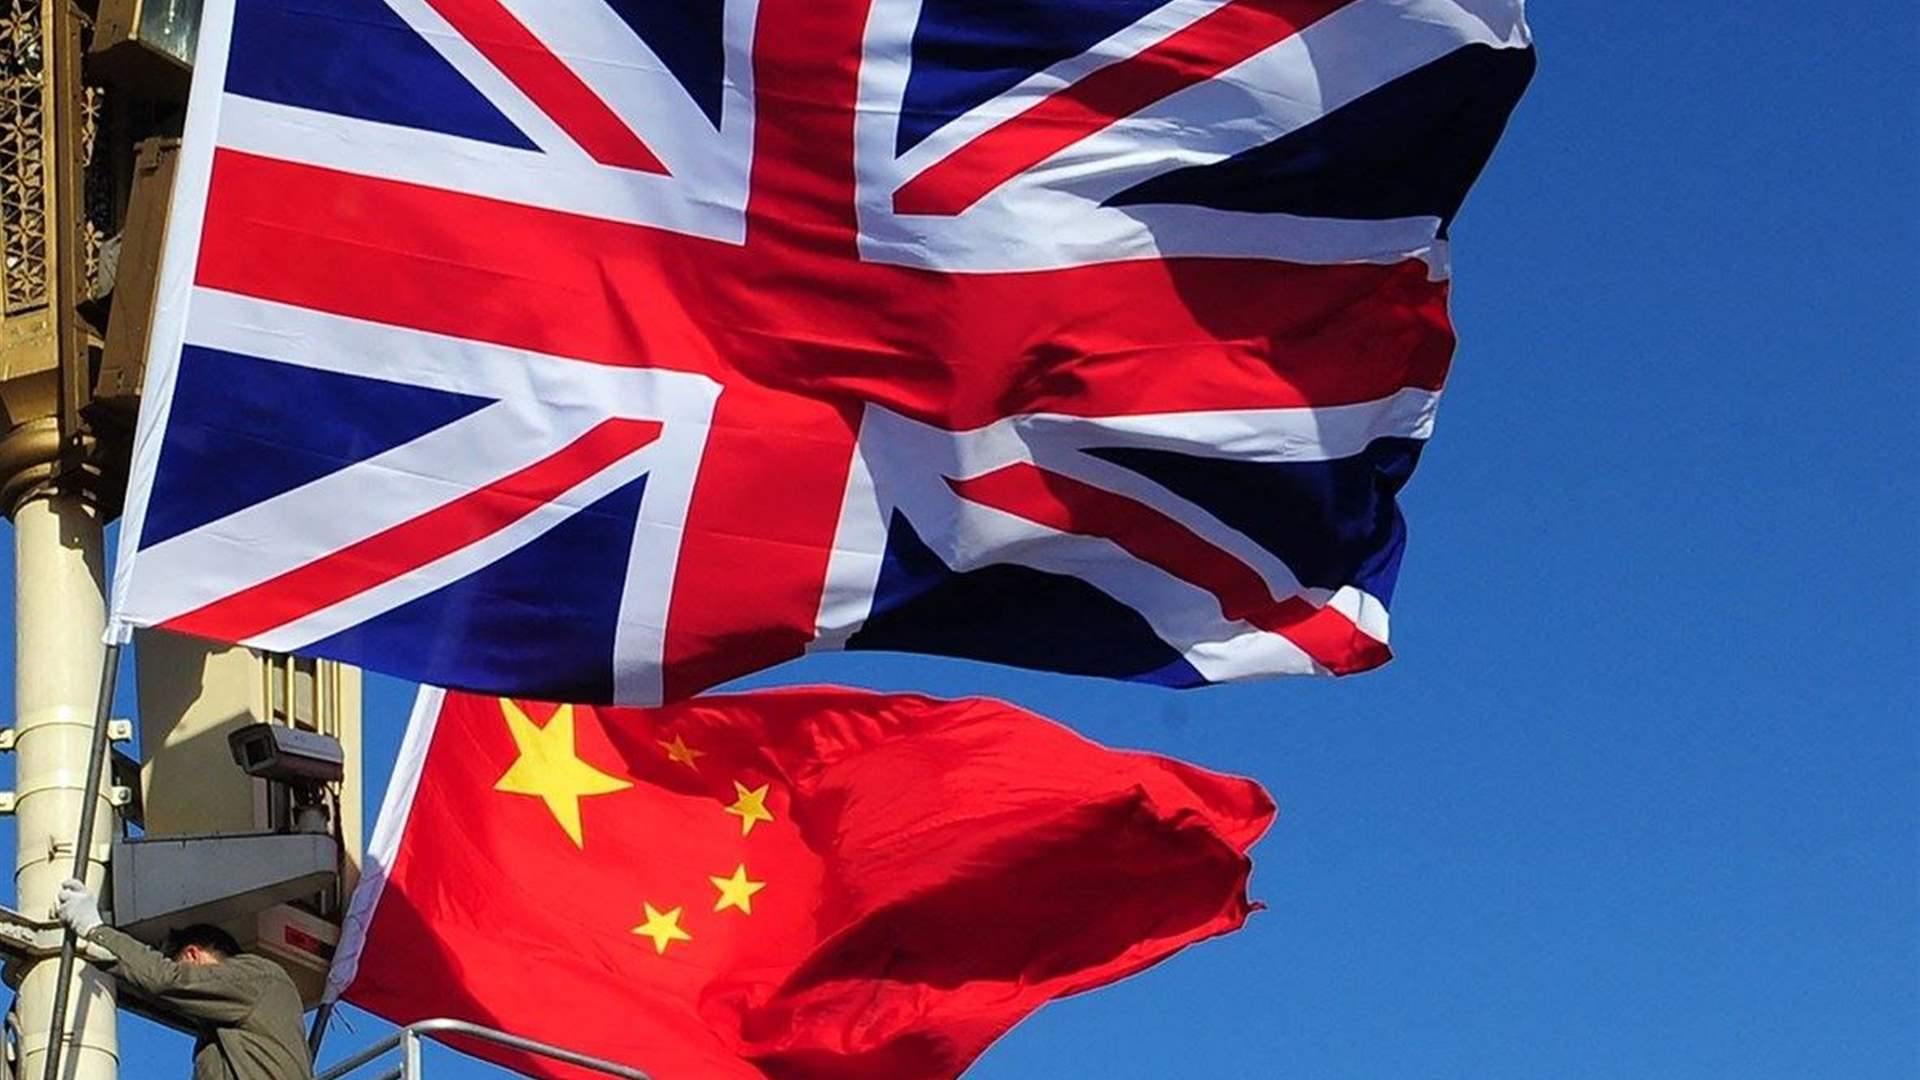 صحيفة "صنداي تايمز" شرطة بريطانيا تُوقف باحث في البرلمان يشتبه بأنه عمل لصالح الصين